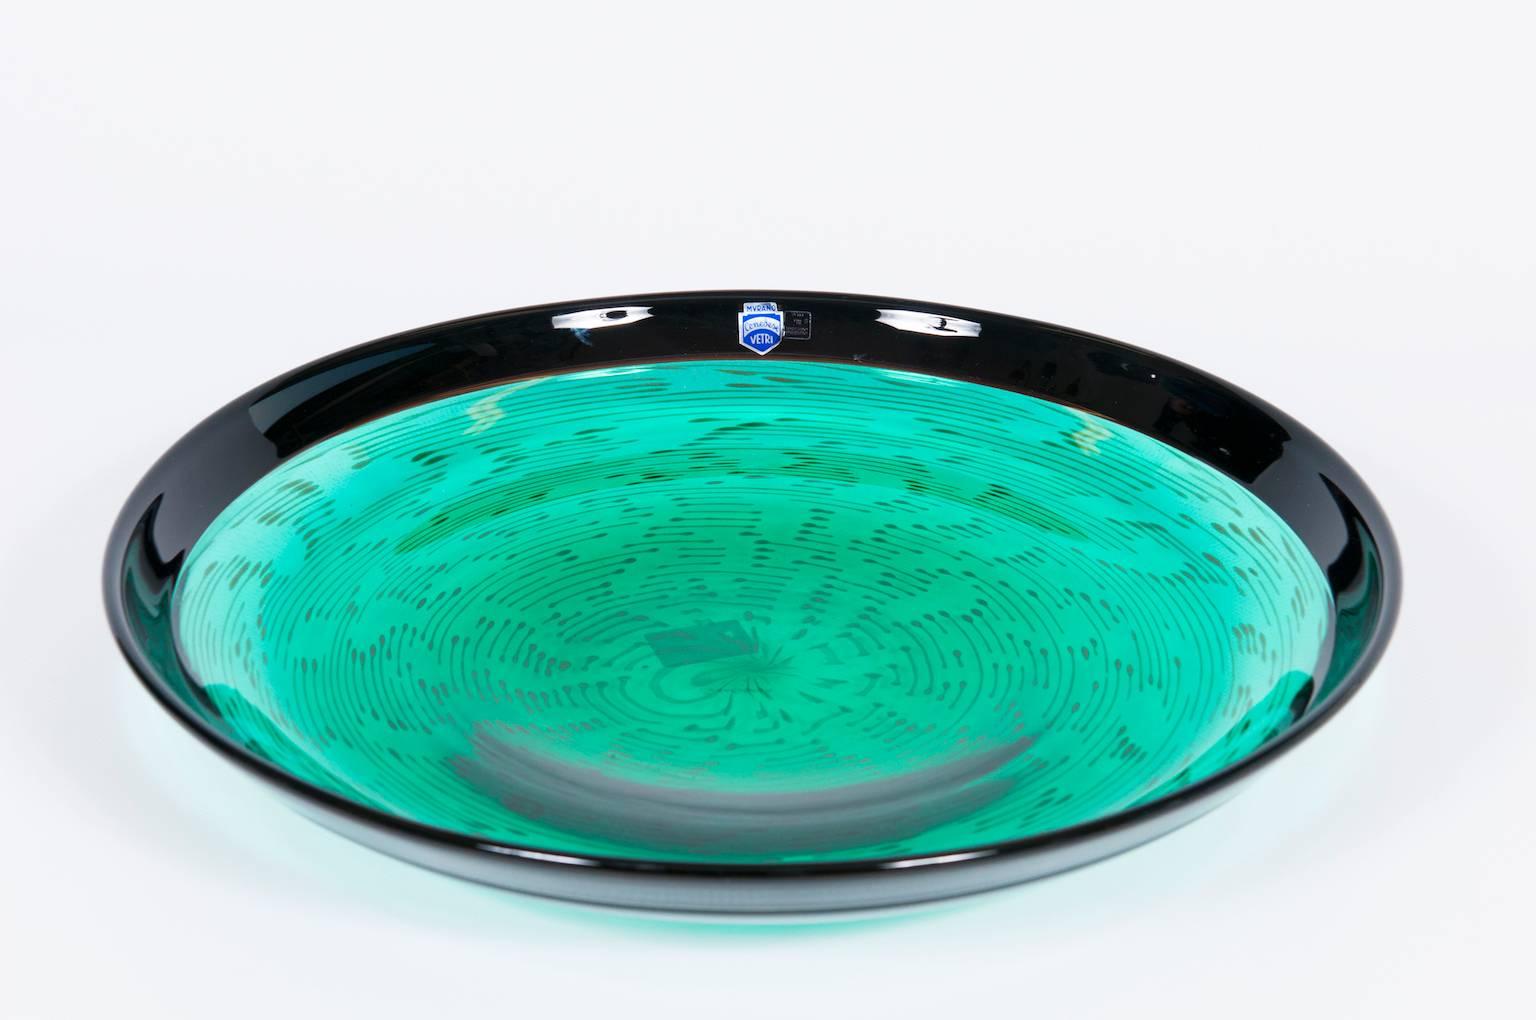 Elegant, italienisch-venezianisch, Schale, geblasenes Murano-Glas, grüner Aquamarin, signiert von Cenedese, 1970er Jahre.
Diese Schale ist ein einzigartiges Porträt, das auf der venezianischen Insel Murano aus mundgeblasenem Murano-Glas